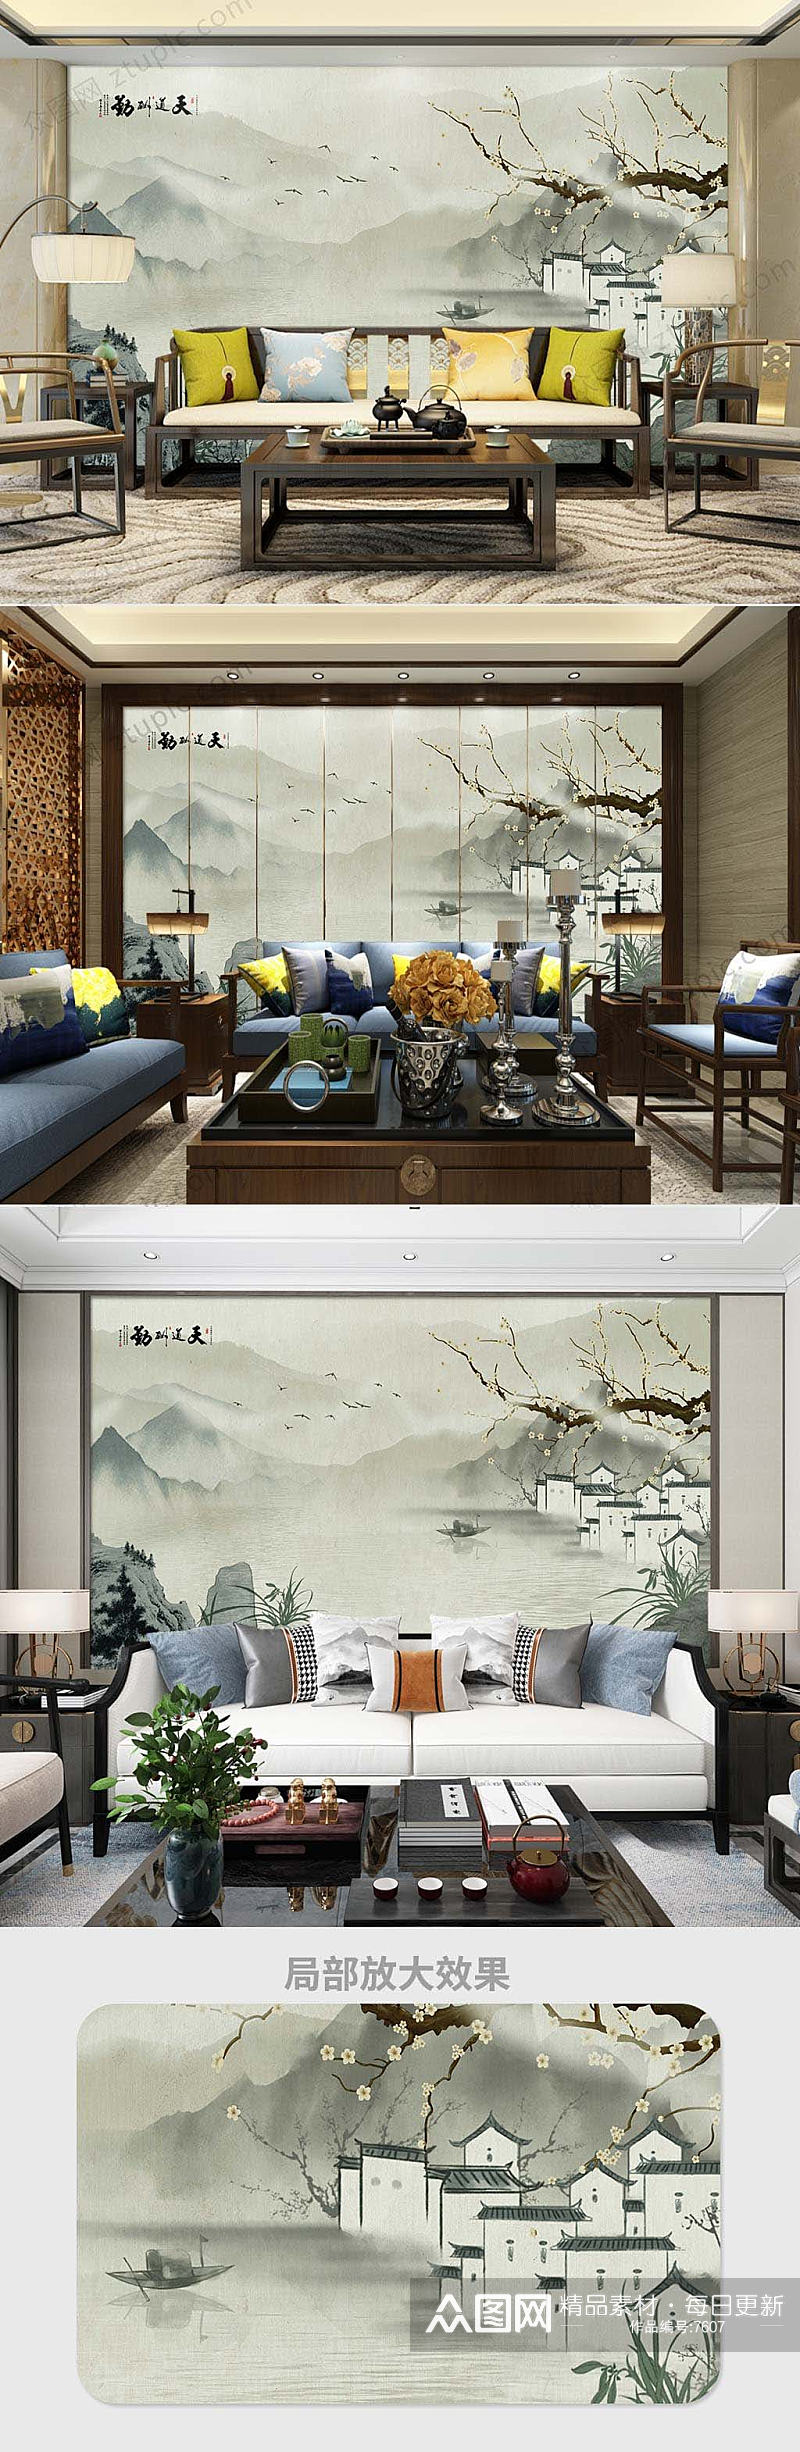 新中式简约山水画背景墙素材